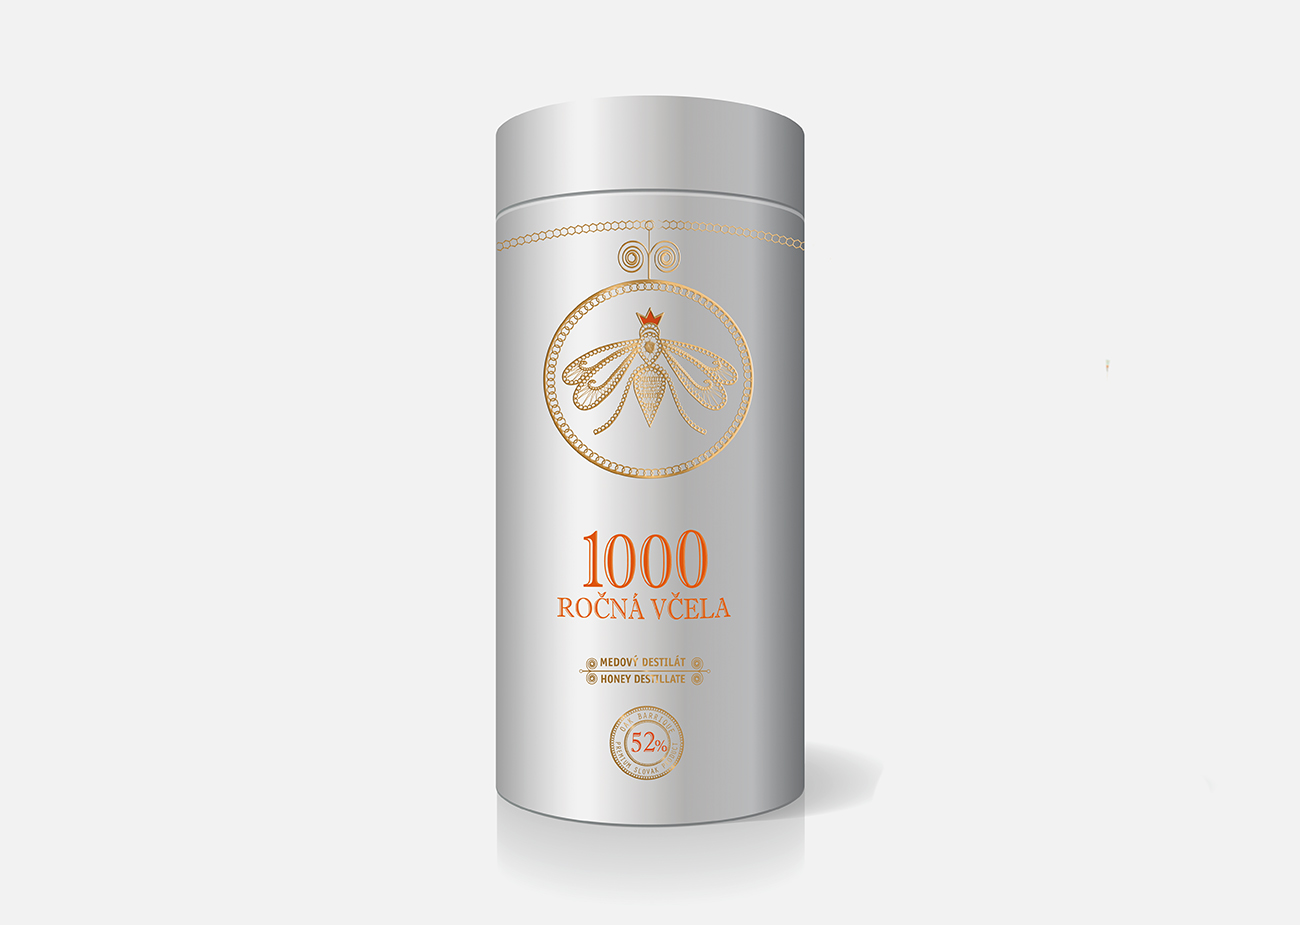 1000 ročná včela branding